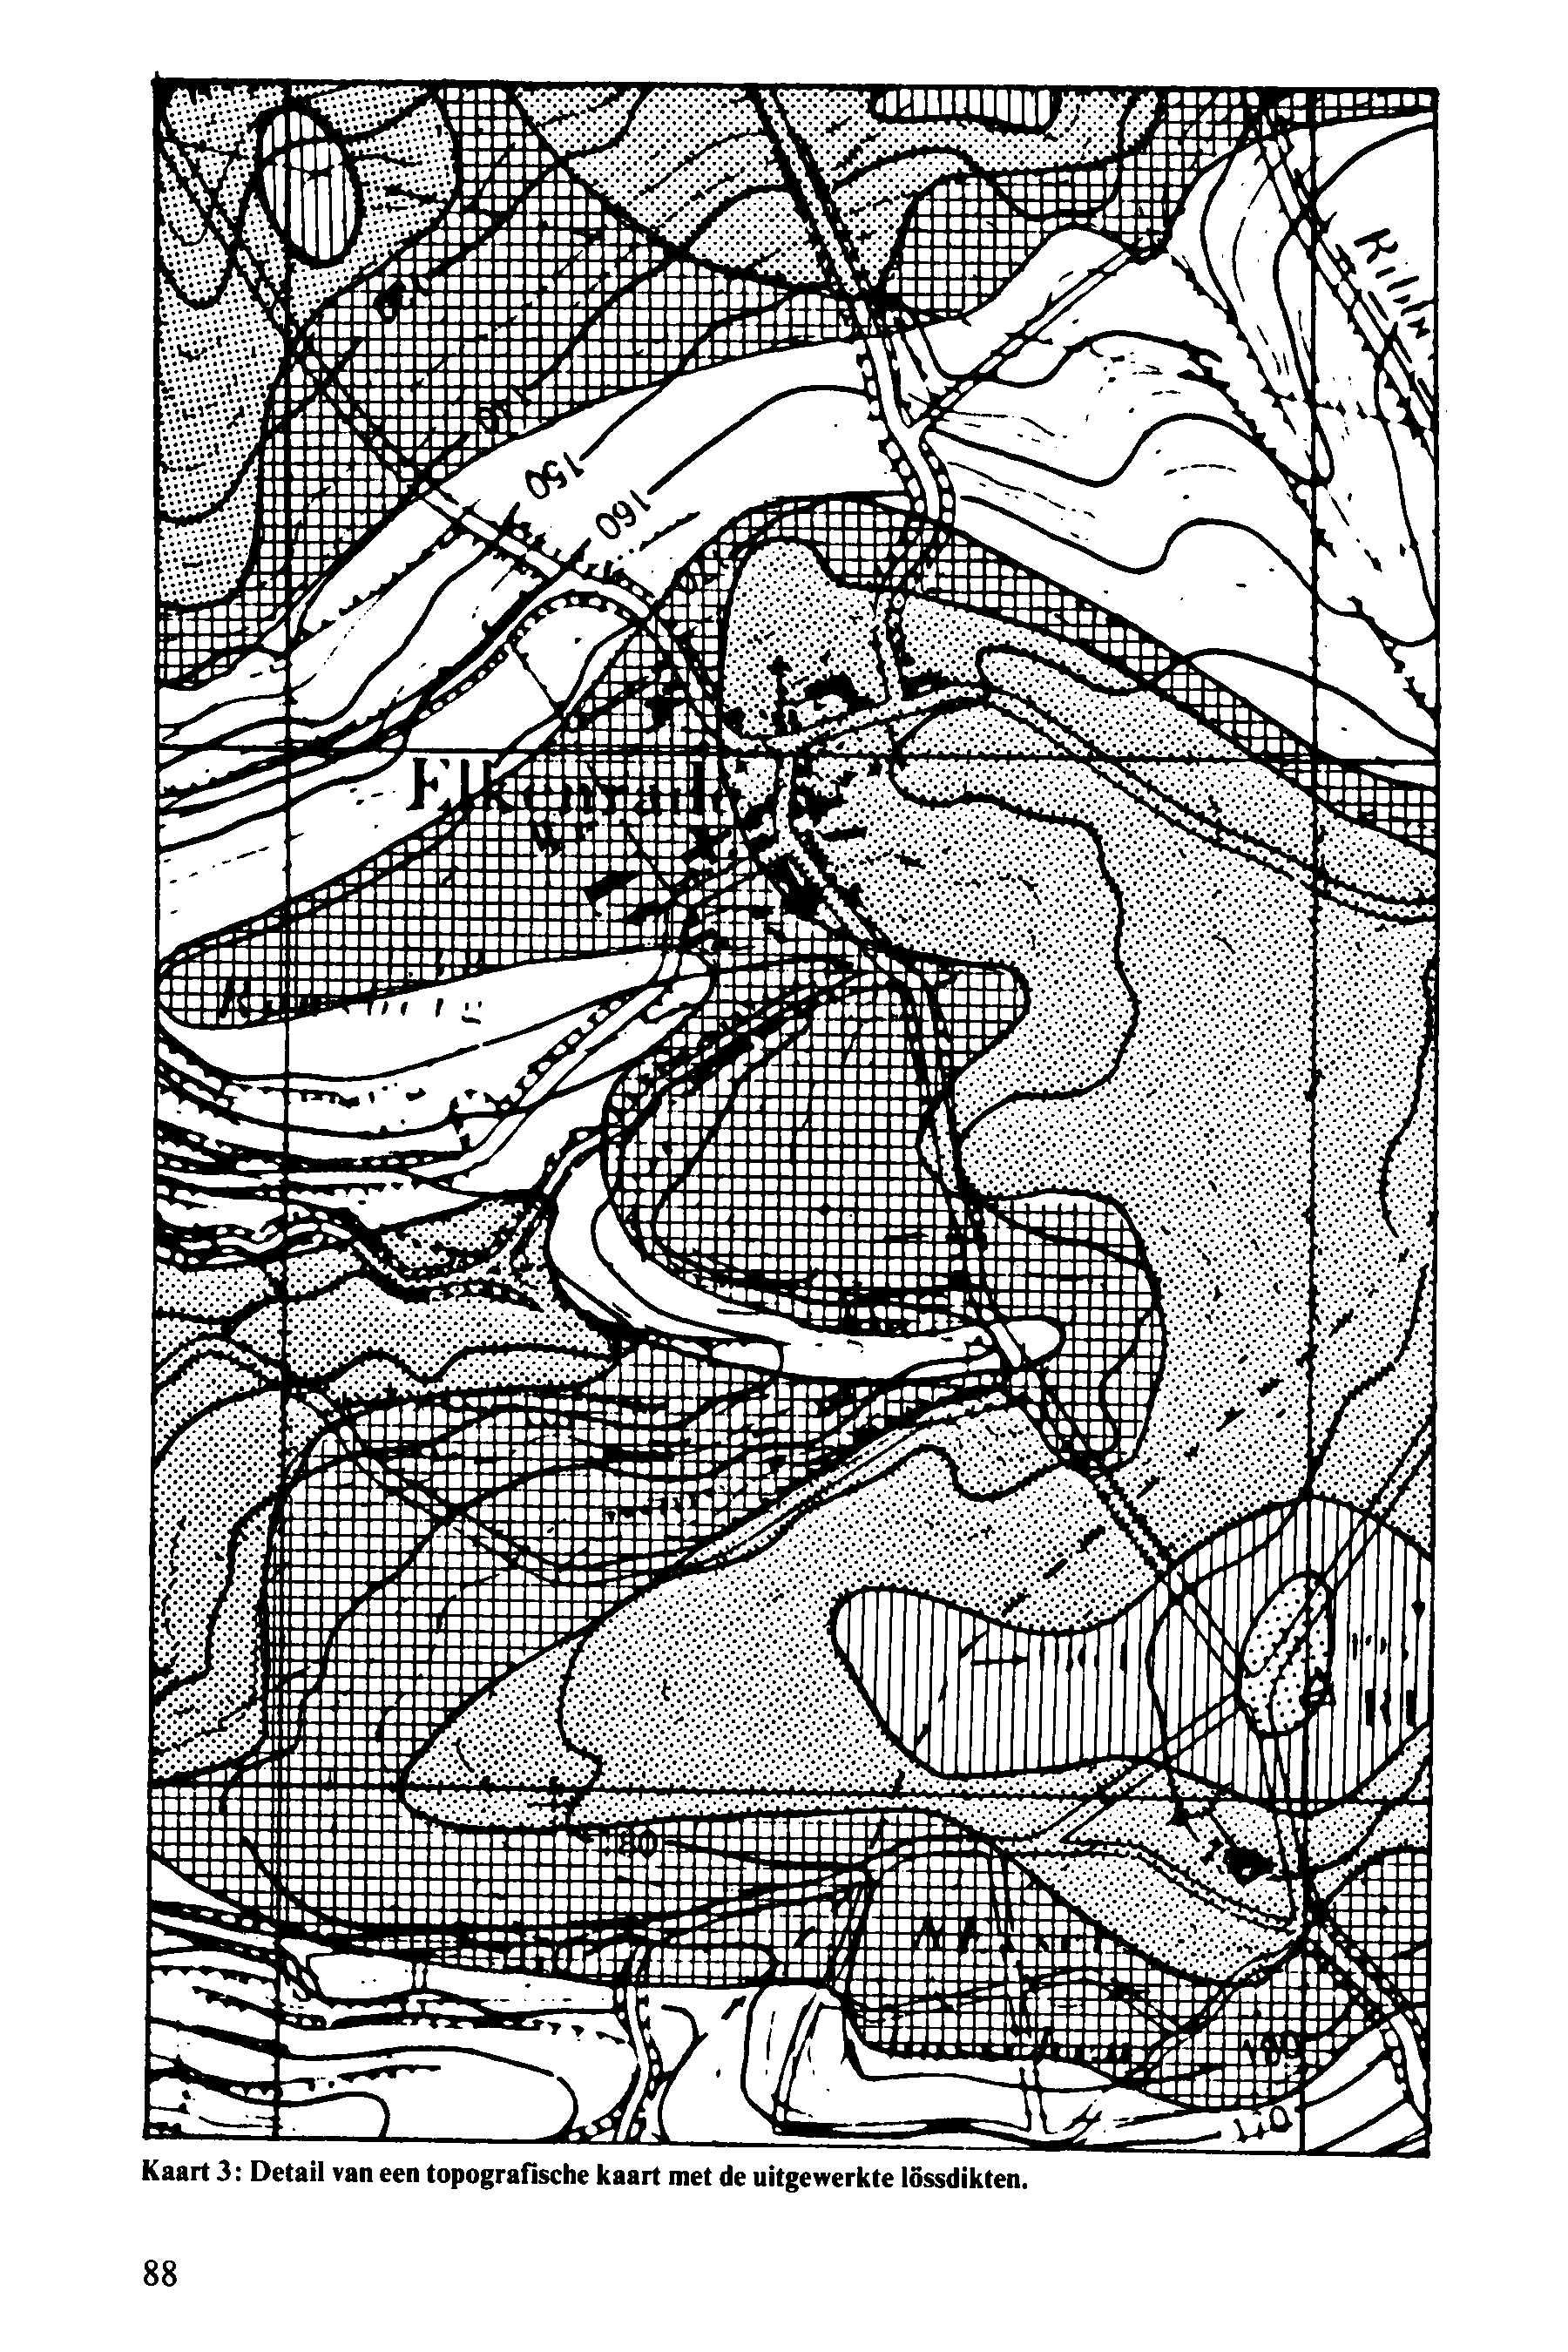 Kaart 3: Detail van een topografische